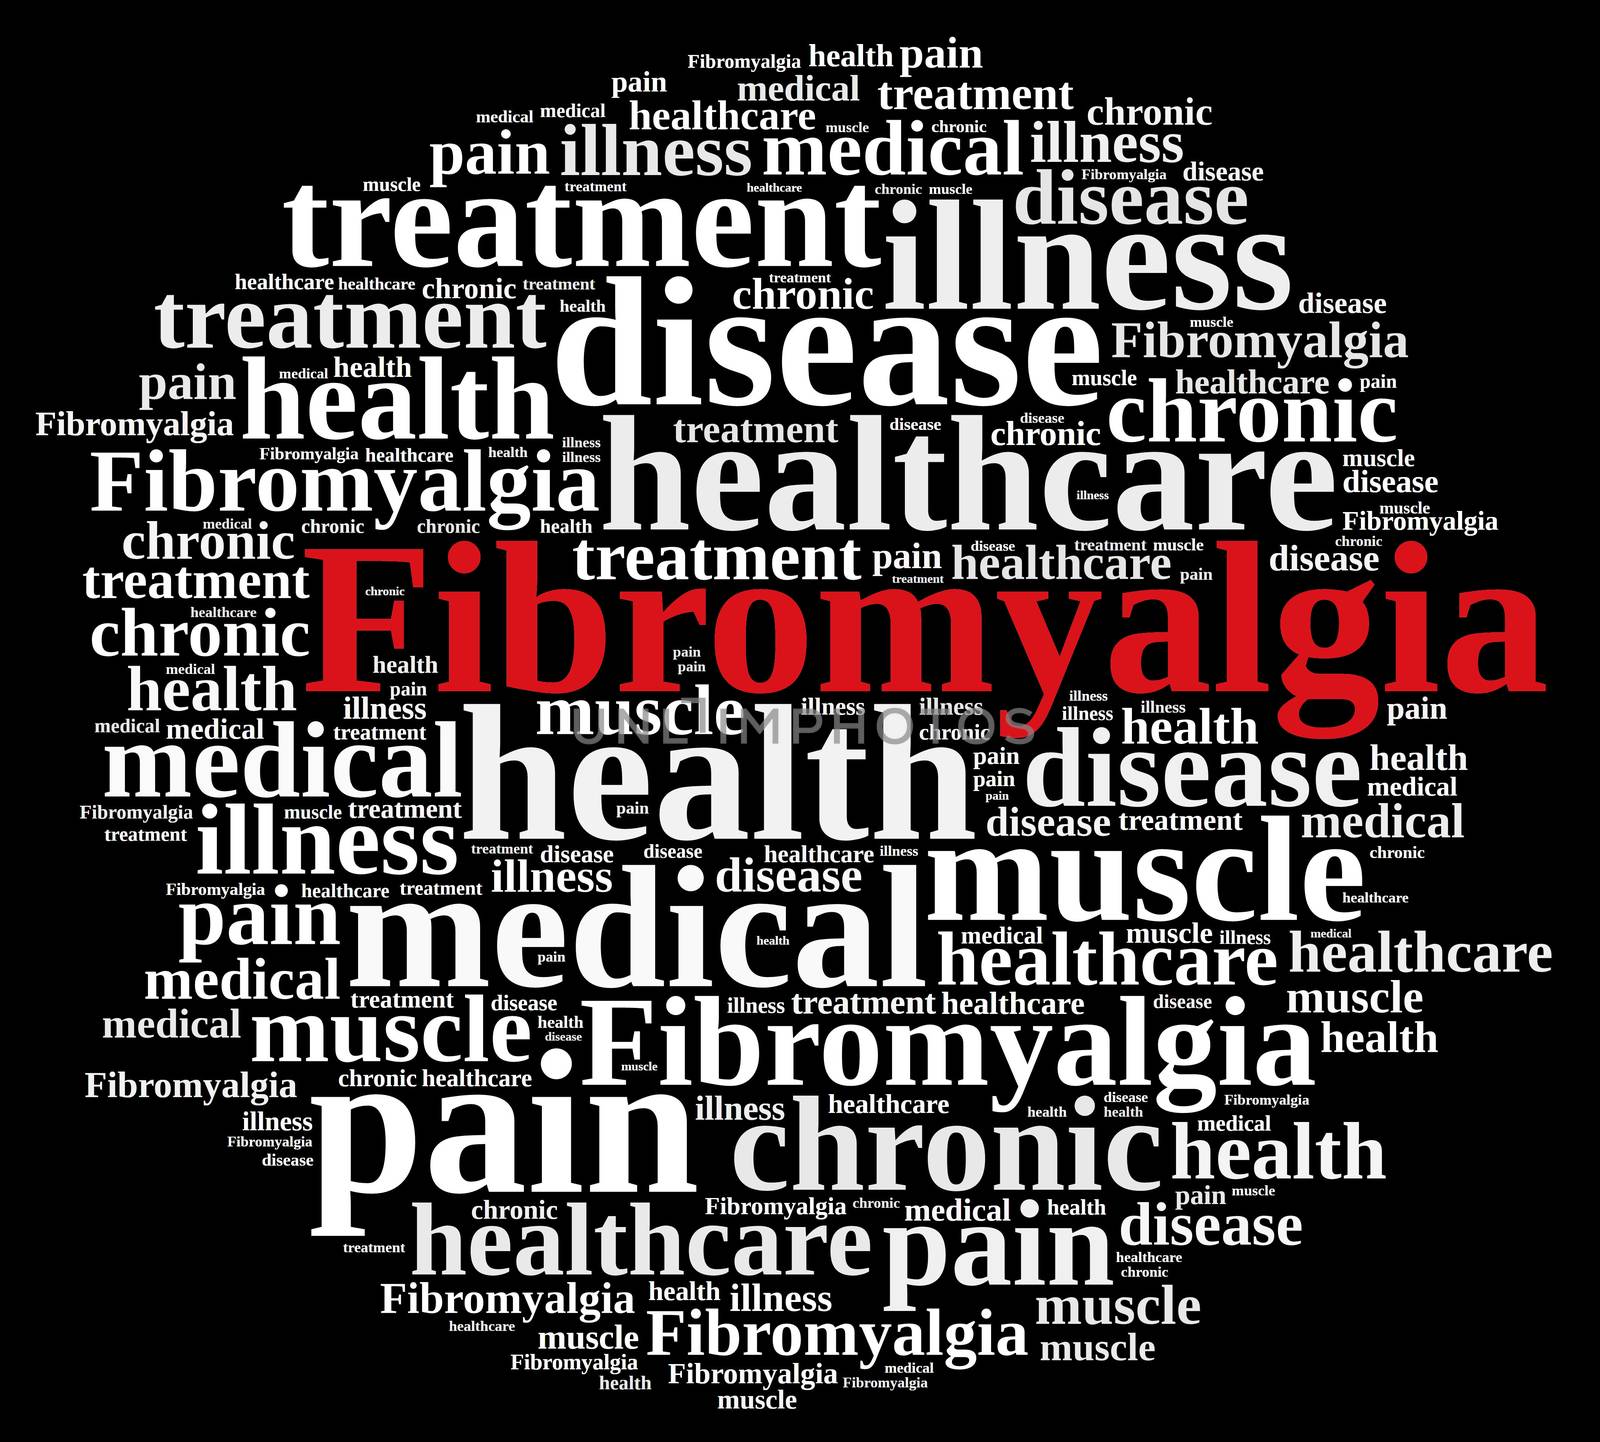 Word cloud on fibromyalgia by CreativePhotoSpain